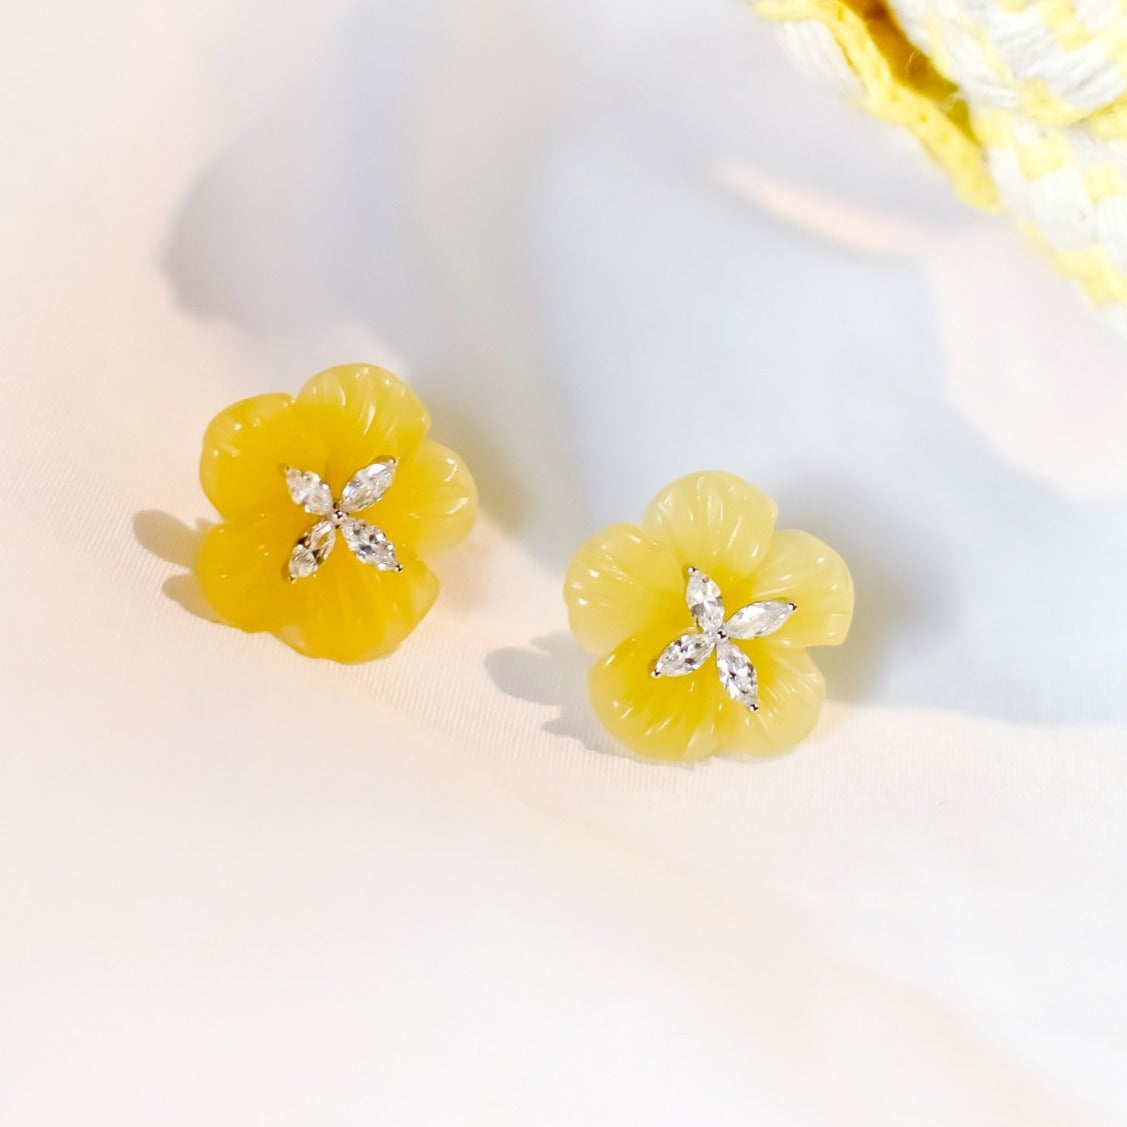 KOSTBARE bloemen* Gele Agaat 16 mm